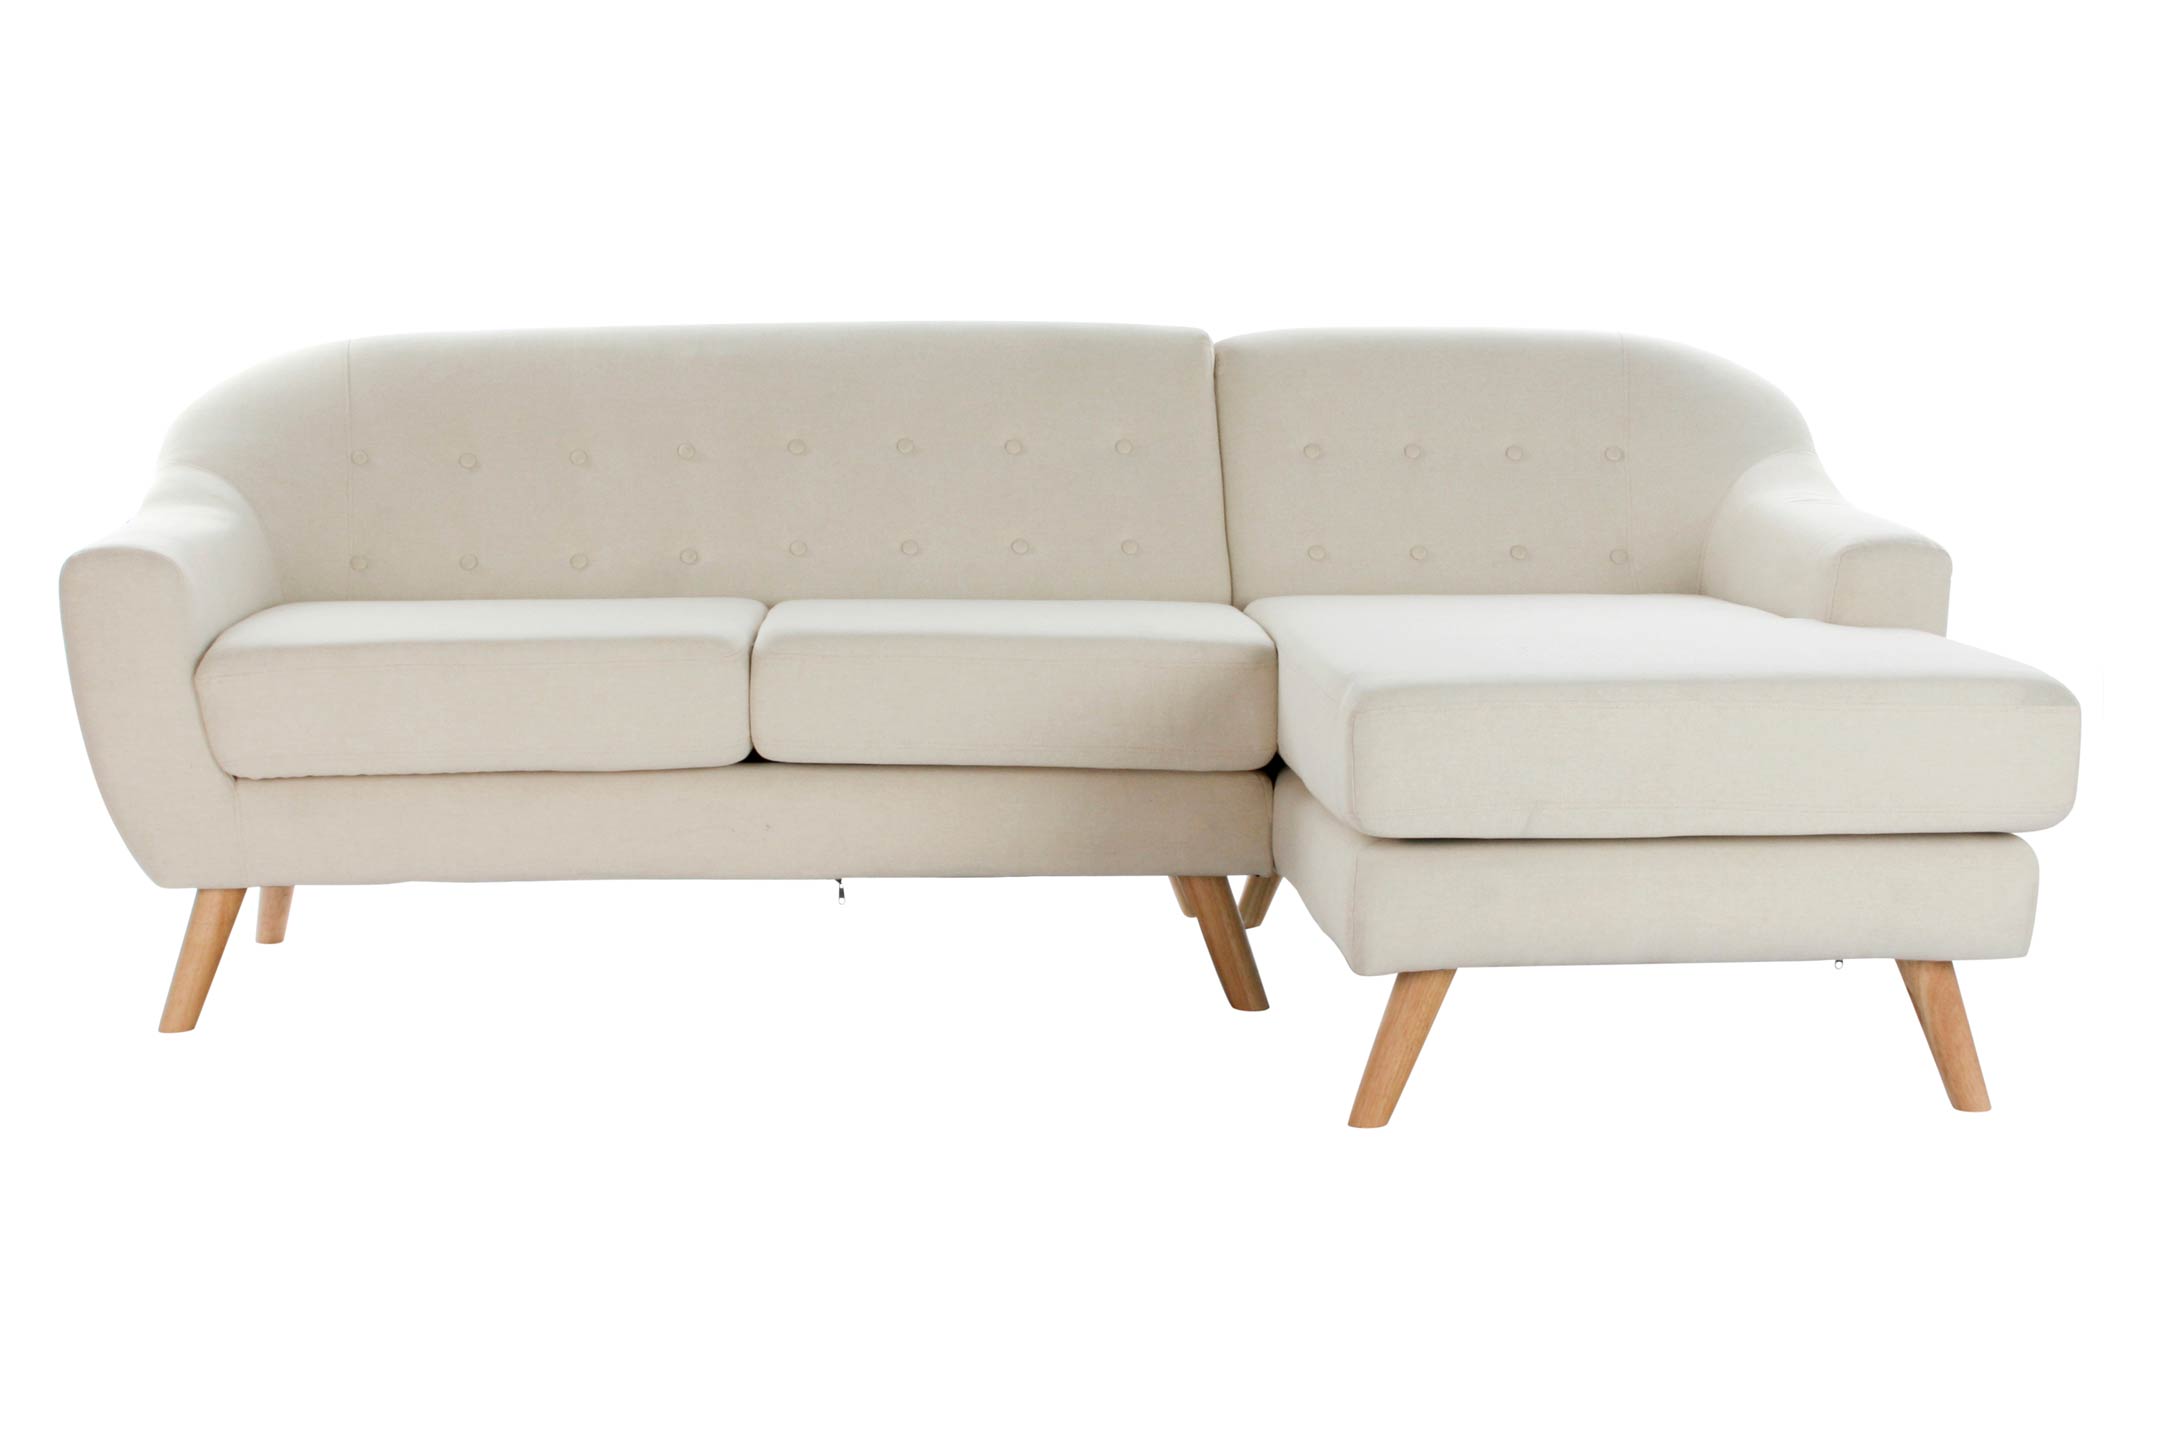 ¡Descubre el sofá de poliéster con chaiselong, la joya de tu sala de estar! Nuestro sofá de poliéster con chaiselong es la combinación perfecta de comodidad y estilo. Su diseño moderno y elegante hará que tu sala de estar luzca sofisticada y acogedora al mismo tiempo.